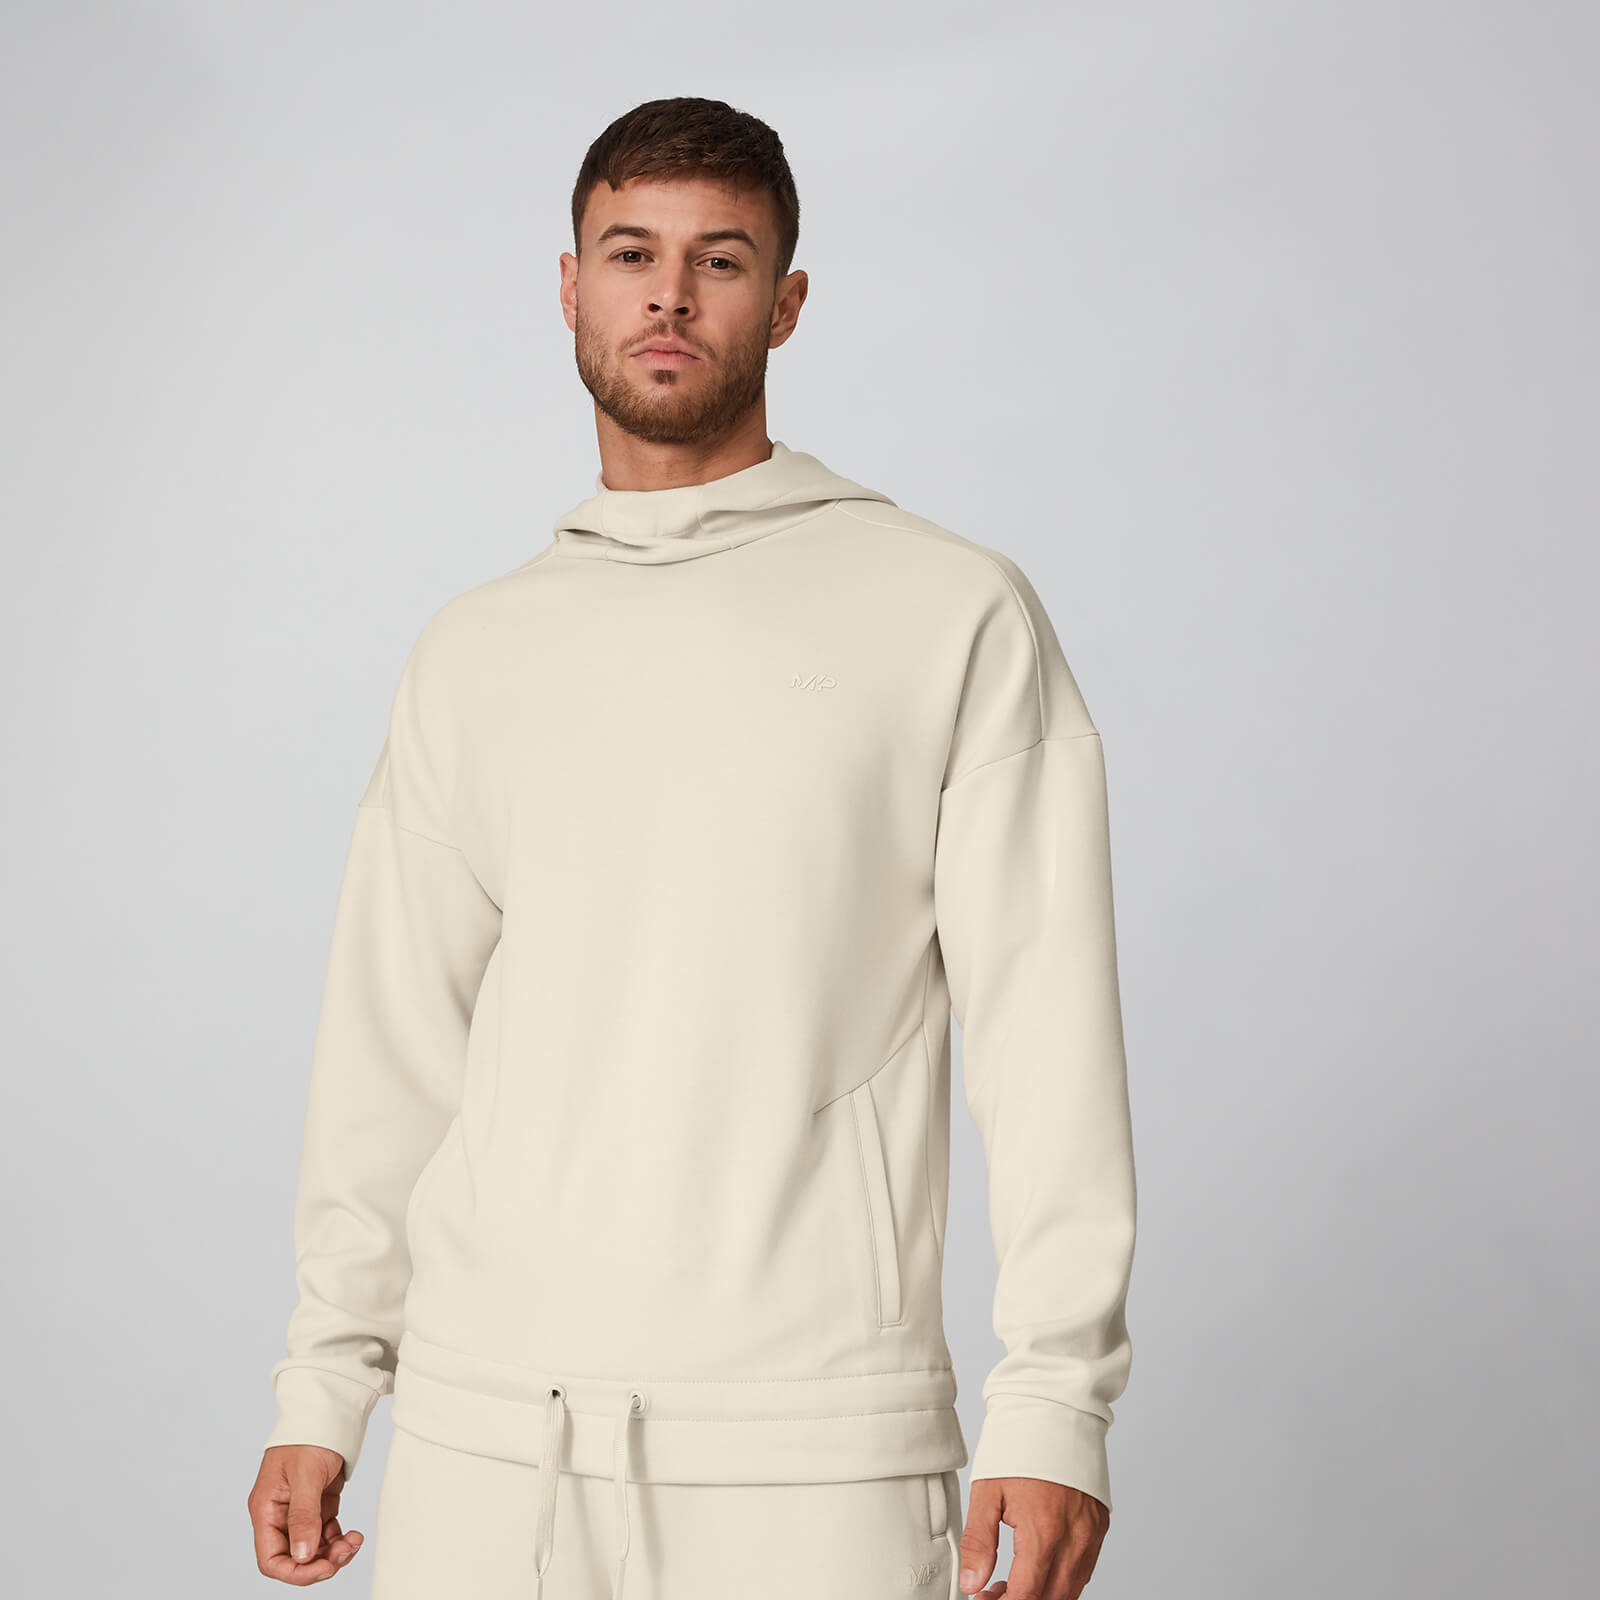 Form Pro Pullover majica s kapuljačom - Boja breskve